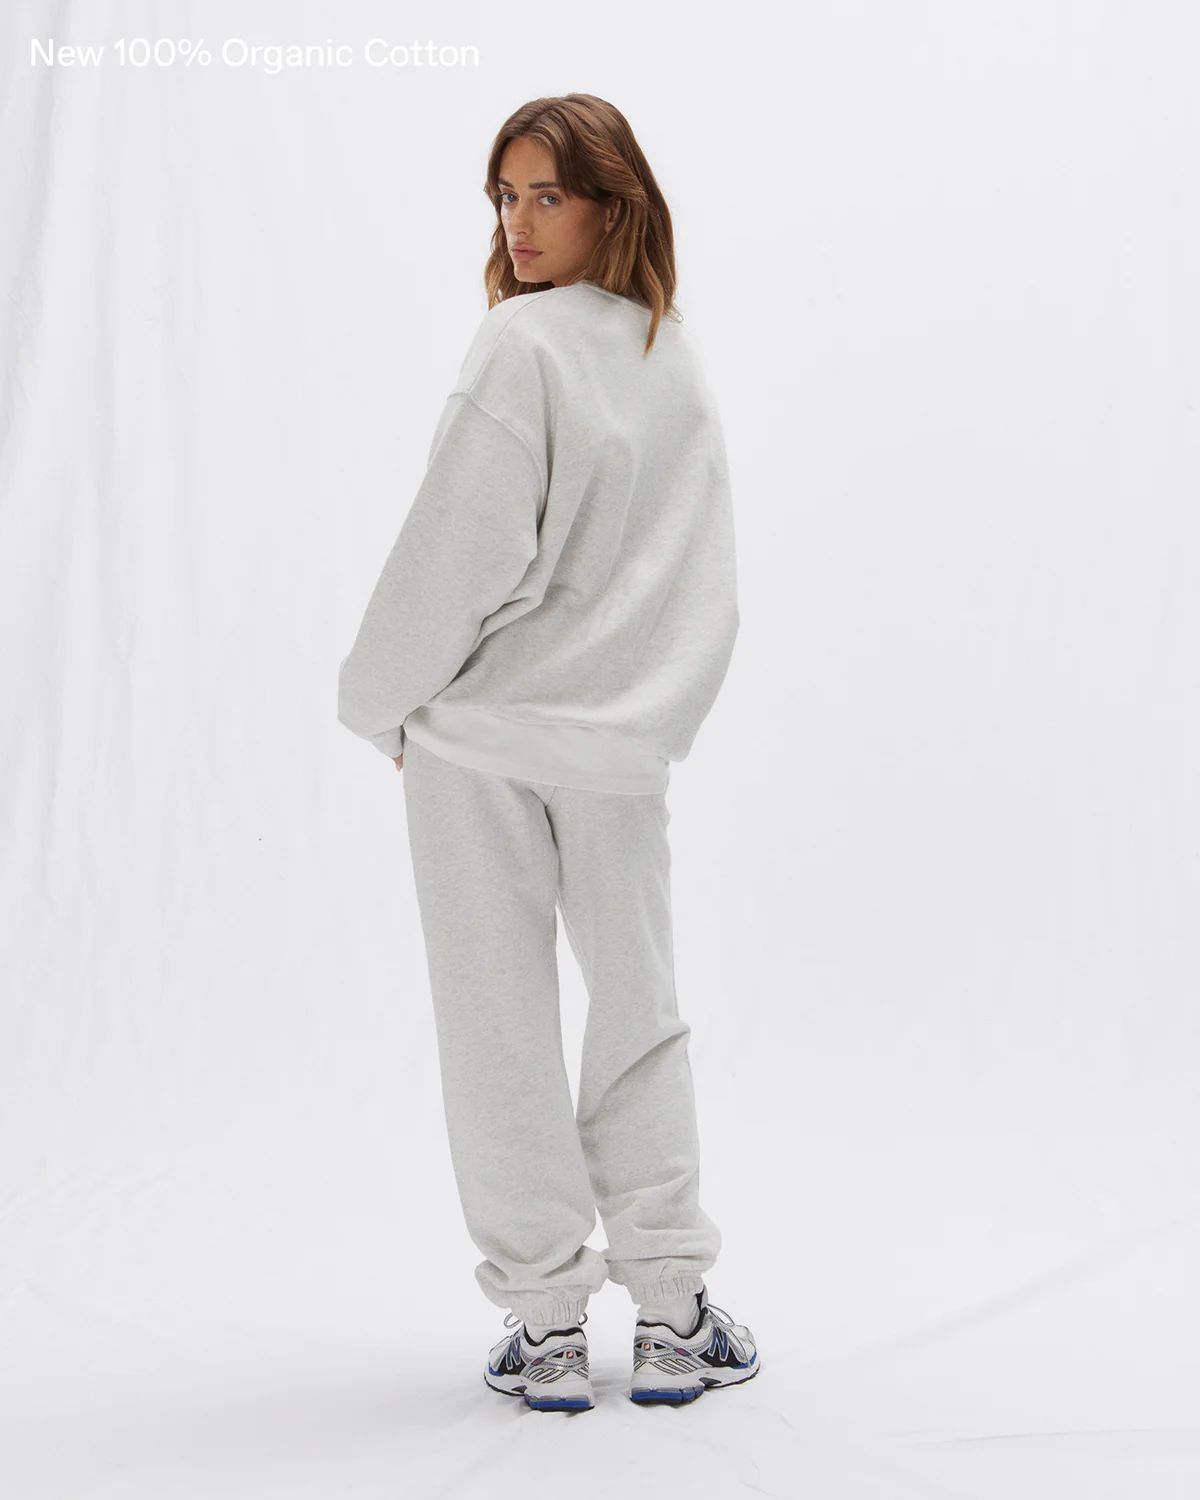 ADA Oversized Sweatshirt - Light Grey Melange | Adanola UK